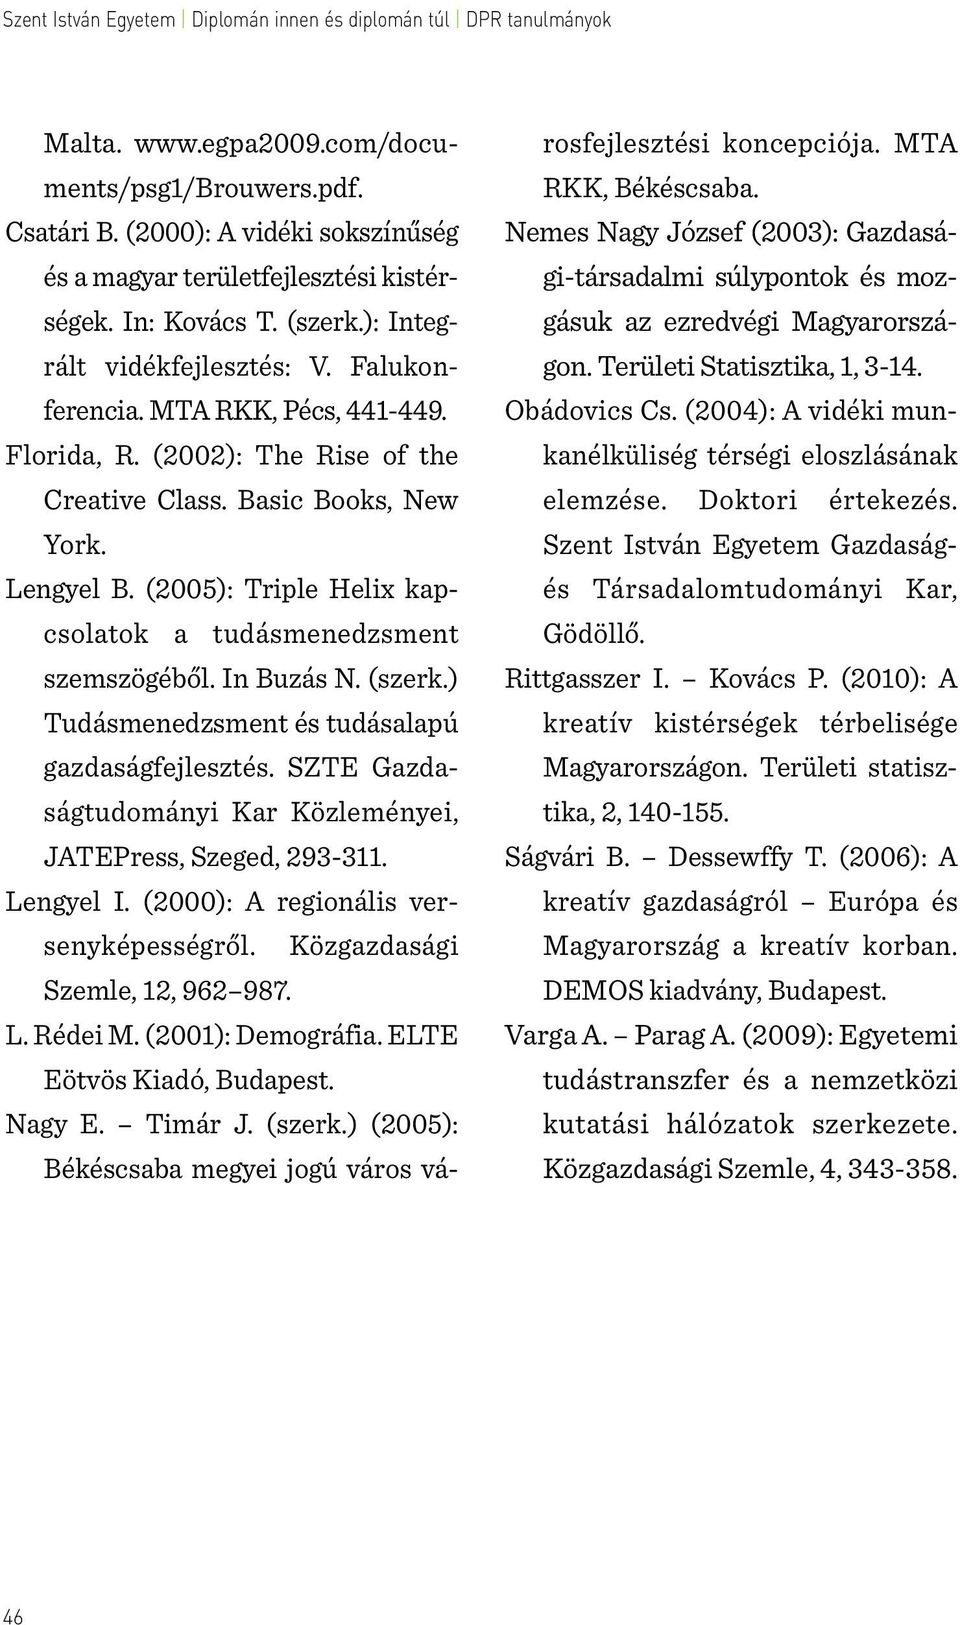 In Buzás N. (szerk.) Tudásmenedzsment és tudásalapú gazdaságfejlesztés. SZTE Gazdaságtudományi Kar Közleményei, JATEPress, Szeged, 293-311. Lengyel I. (2000): A regionális versenyképességről.